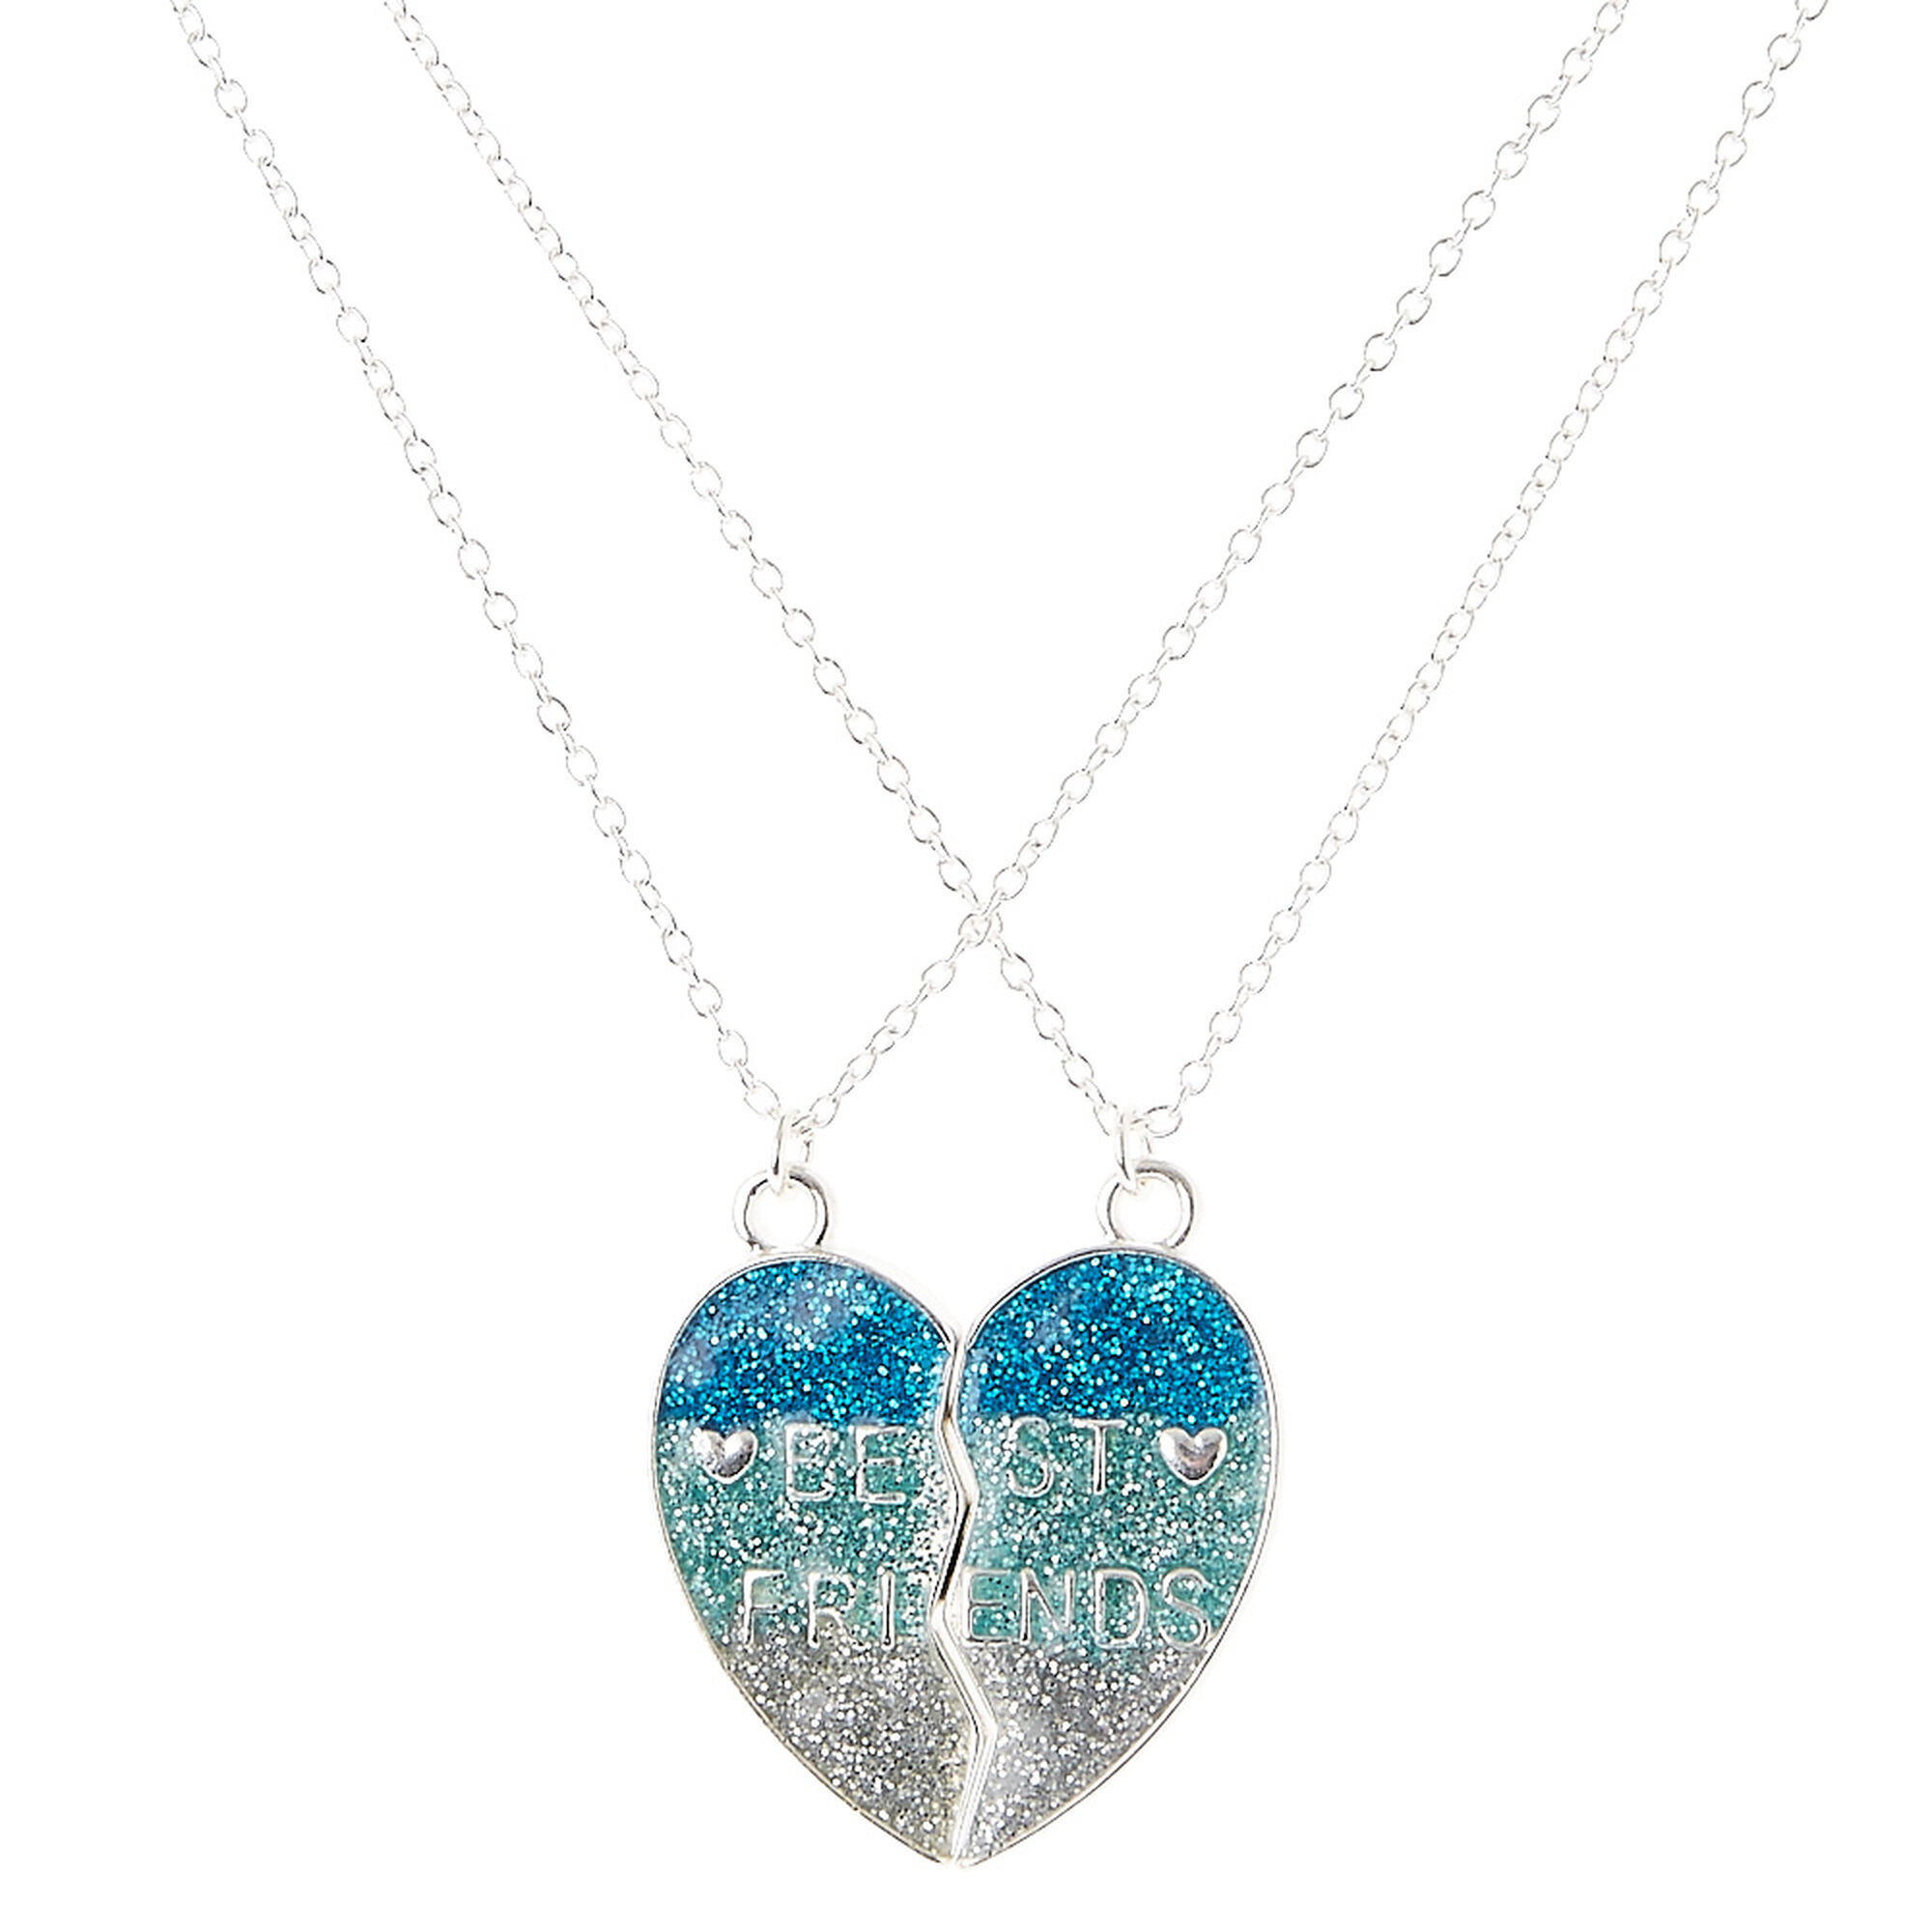 View Claires Best Friends Glitter Spilt Heart Pendant Necklaces Blue information